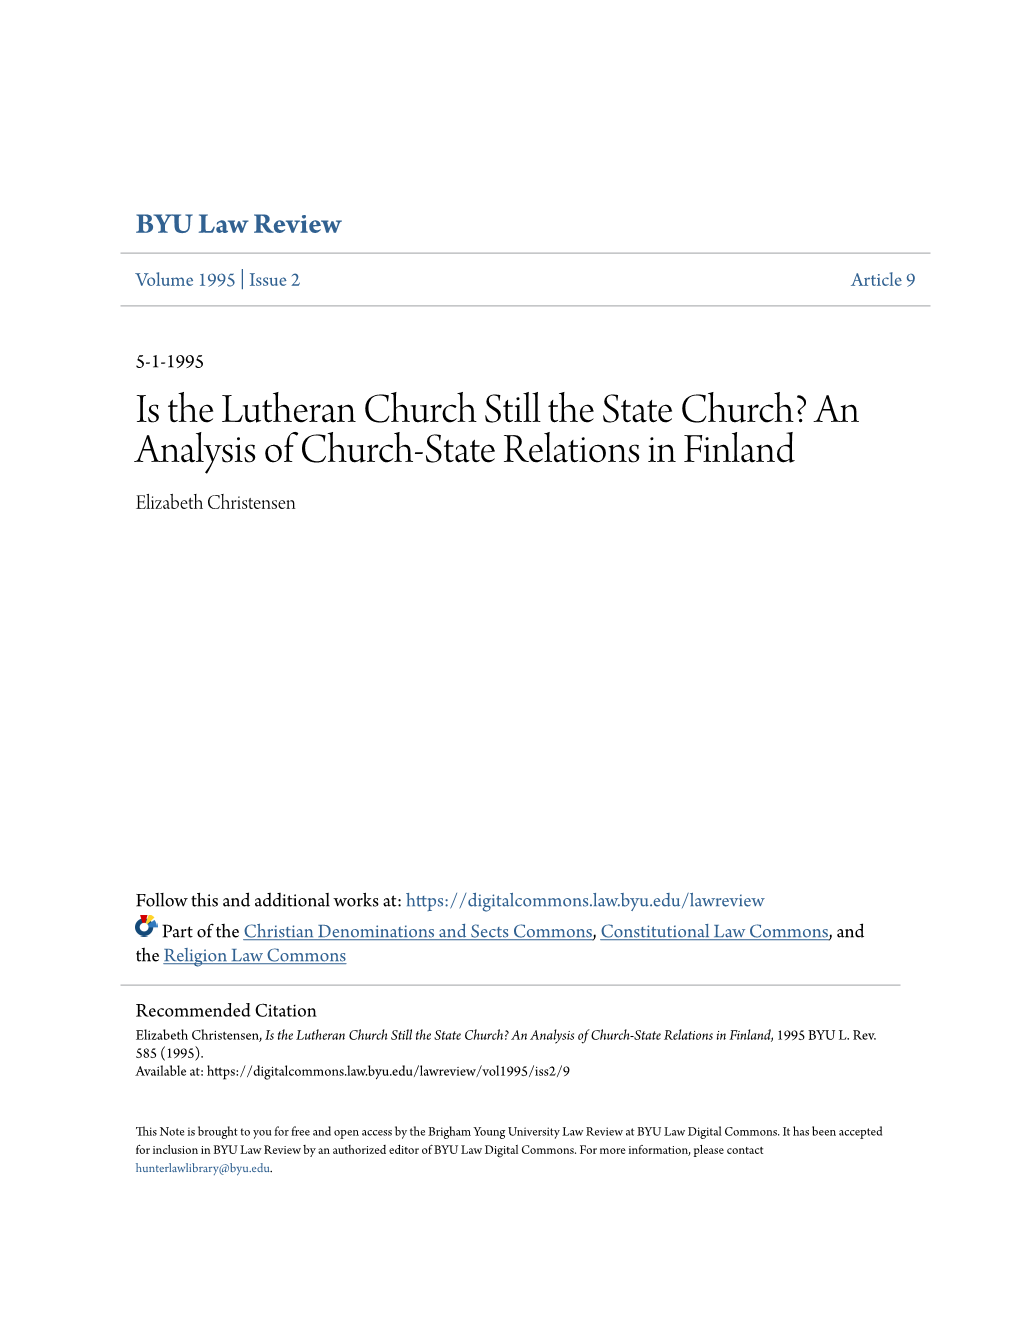 An Analysis of Church-State Relations in Finland Elizabeth Christensen